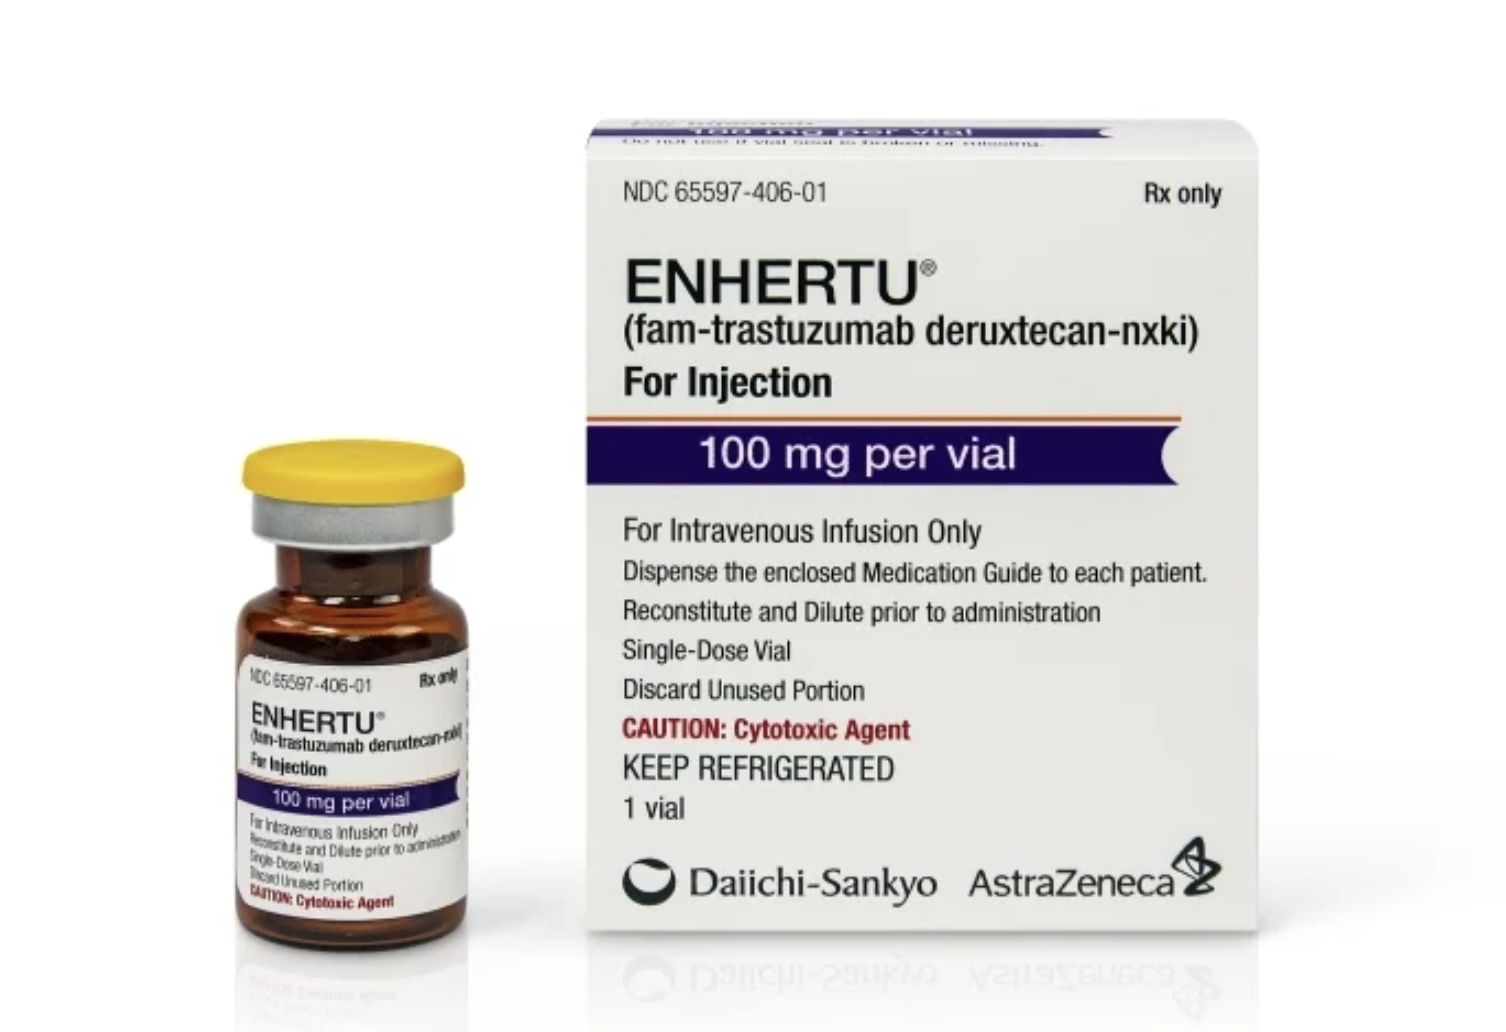 有效率超化療 胃癌靶向藥Enhertu獲FDA批准 | 胃癌新藥| 胃癌新藥 